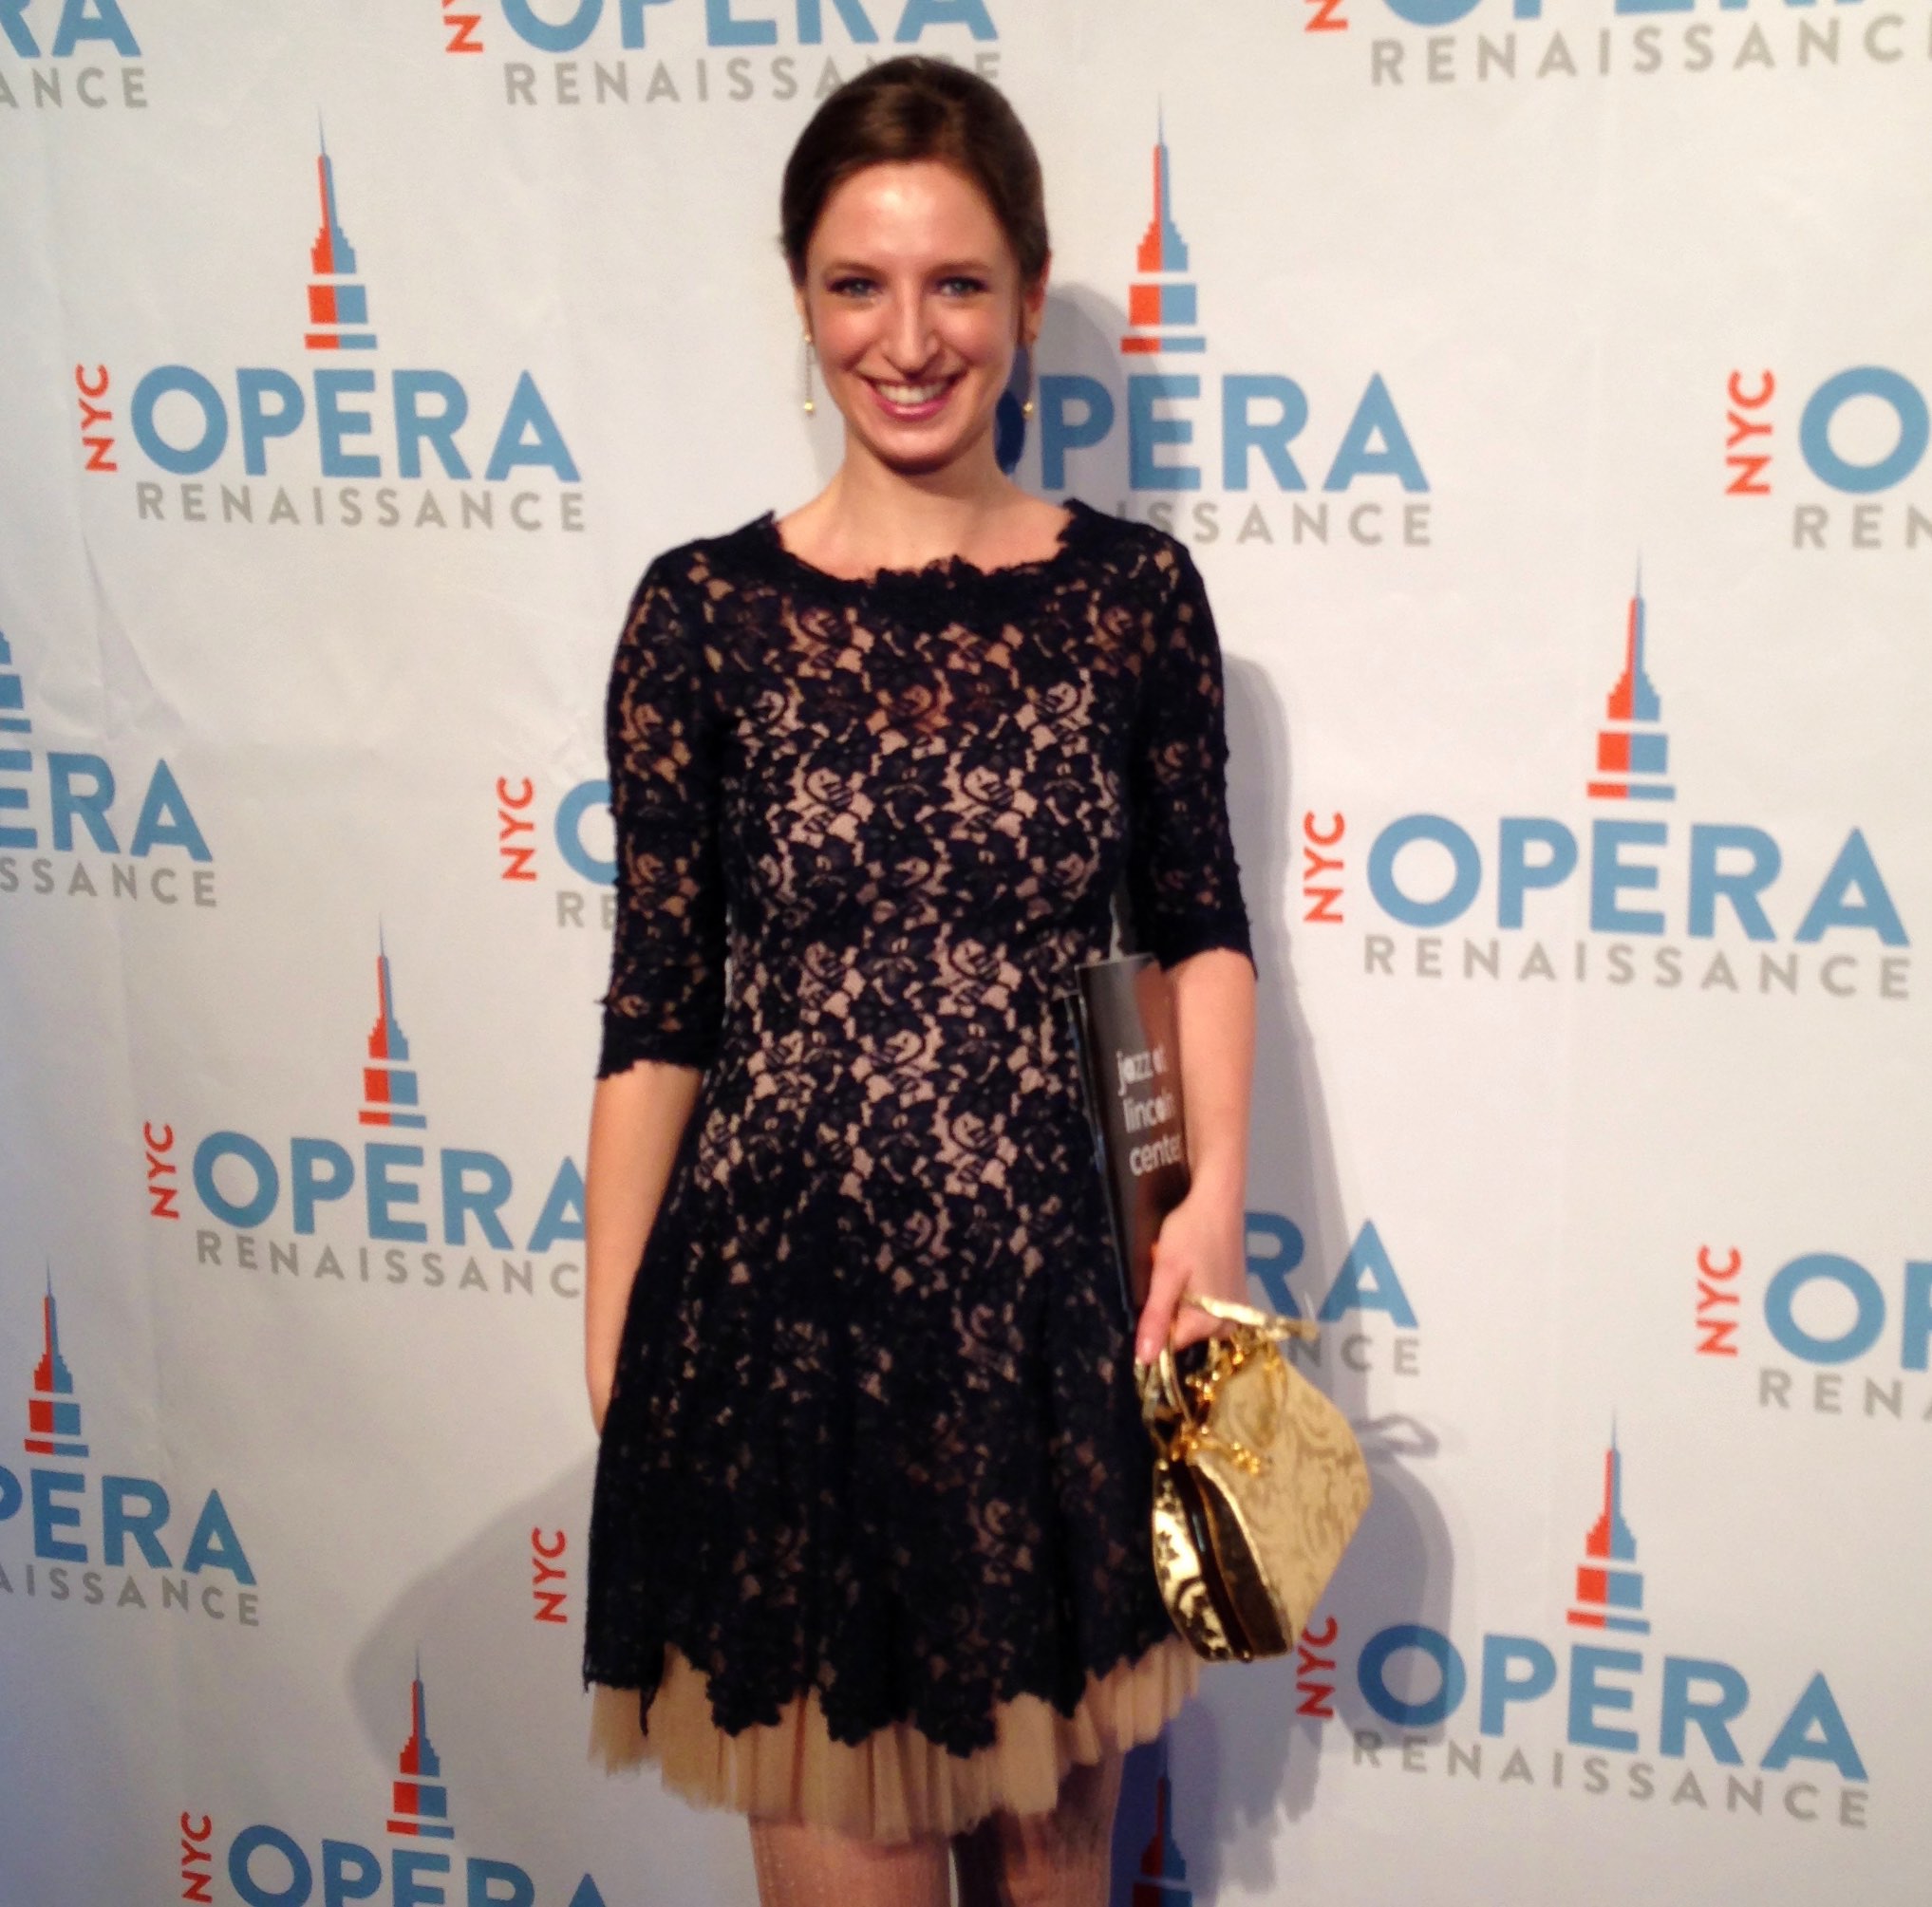 Caterina Rossini al concerto di apertura del NYC Opera Renaissance